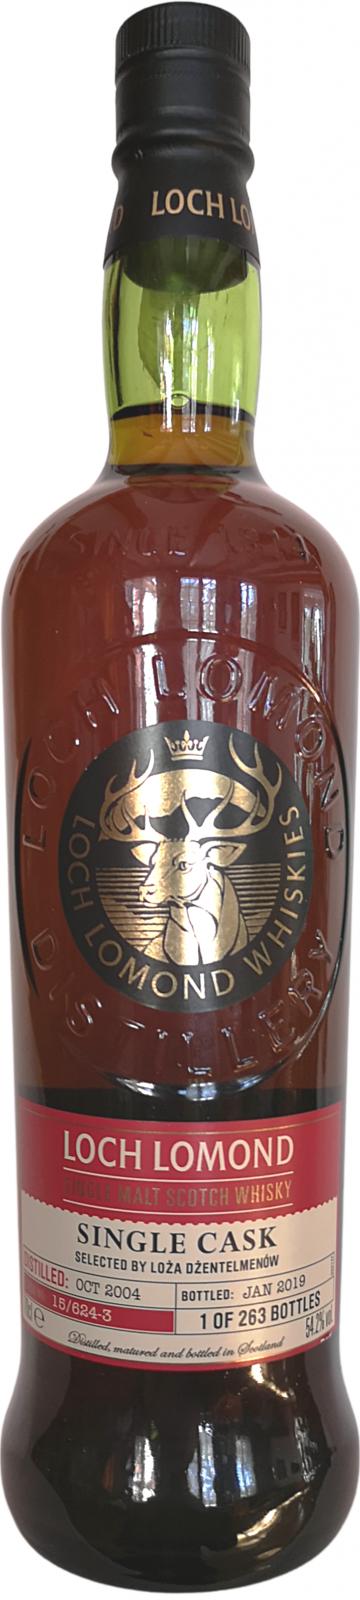 Loch Lomond 2004 Single Cask Limited Edition 15/624-3 Selected by Loza Dzentelmenow 54.2% 700ml